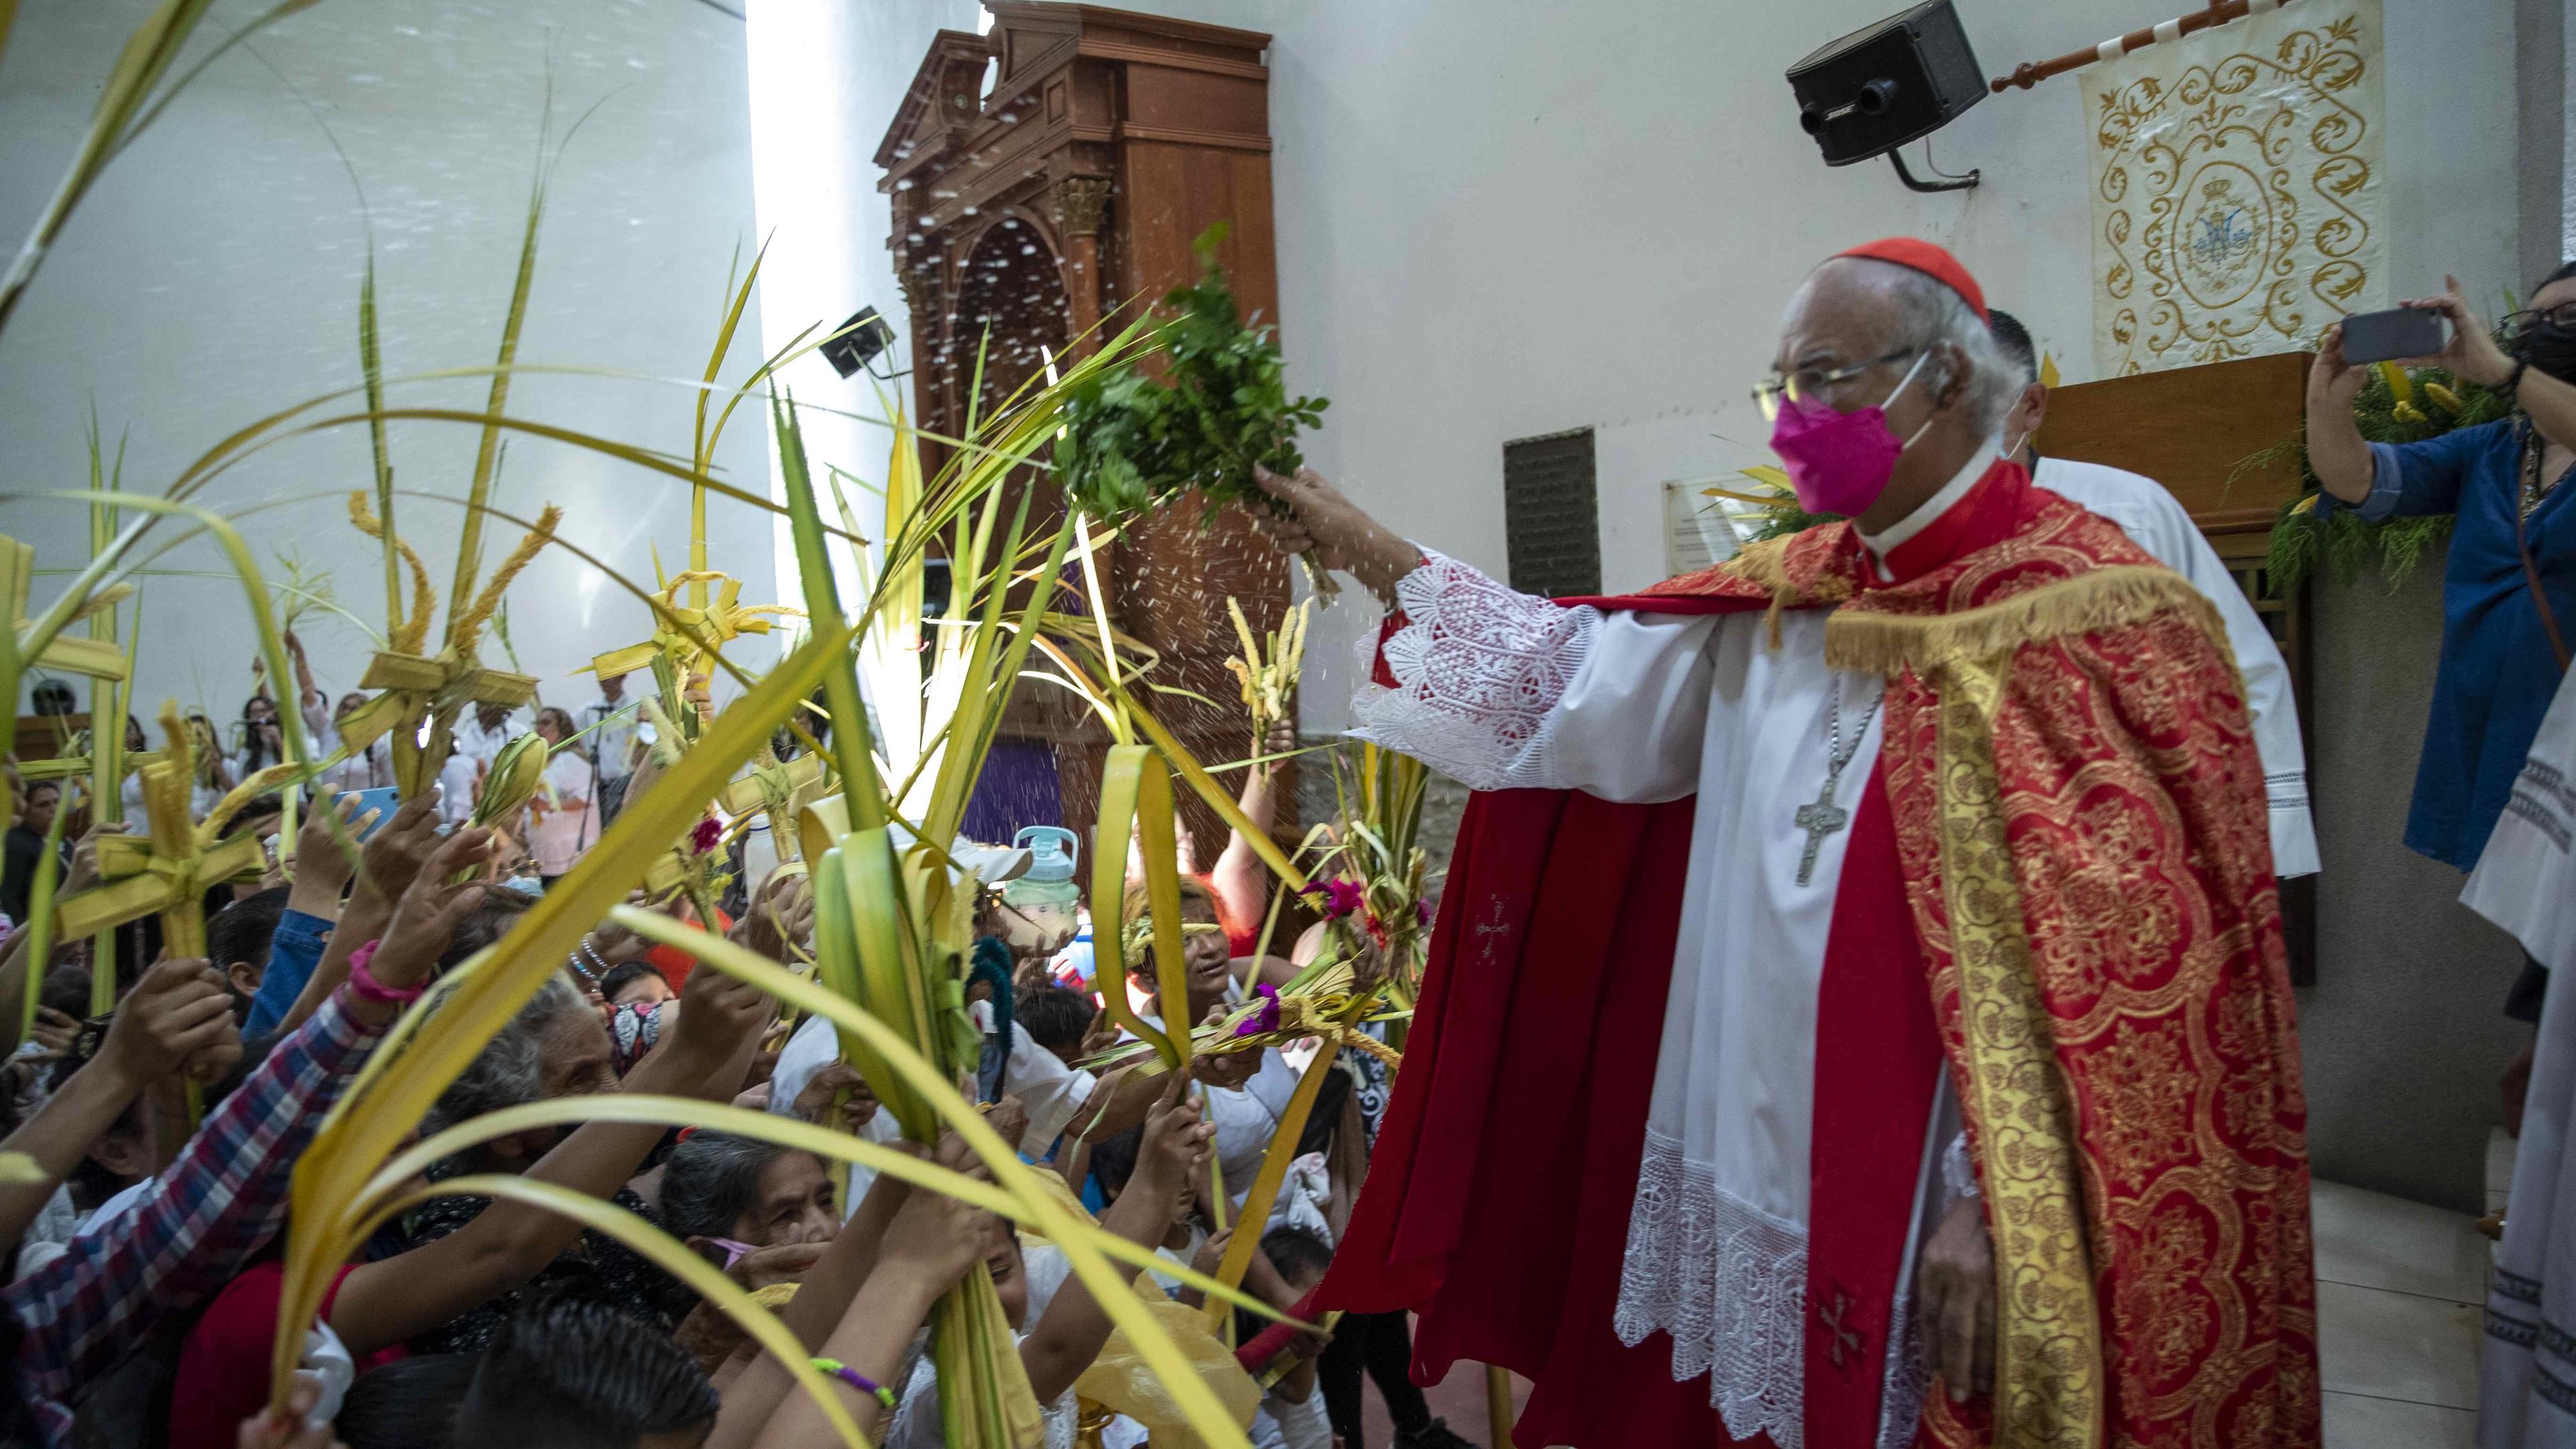 Gottesdienst in Nicaragua. Ein Priester hält einen Gottesdienst zum Palmsonntag vor einer Menge Menschen.